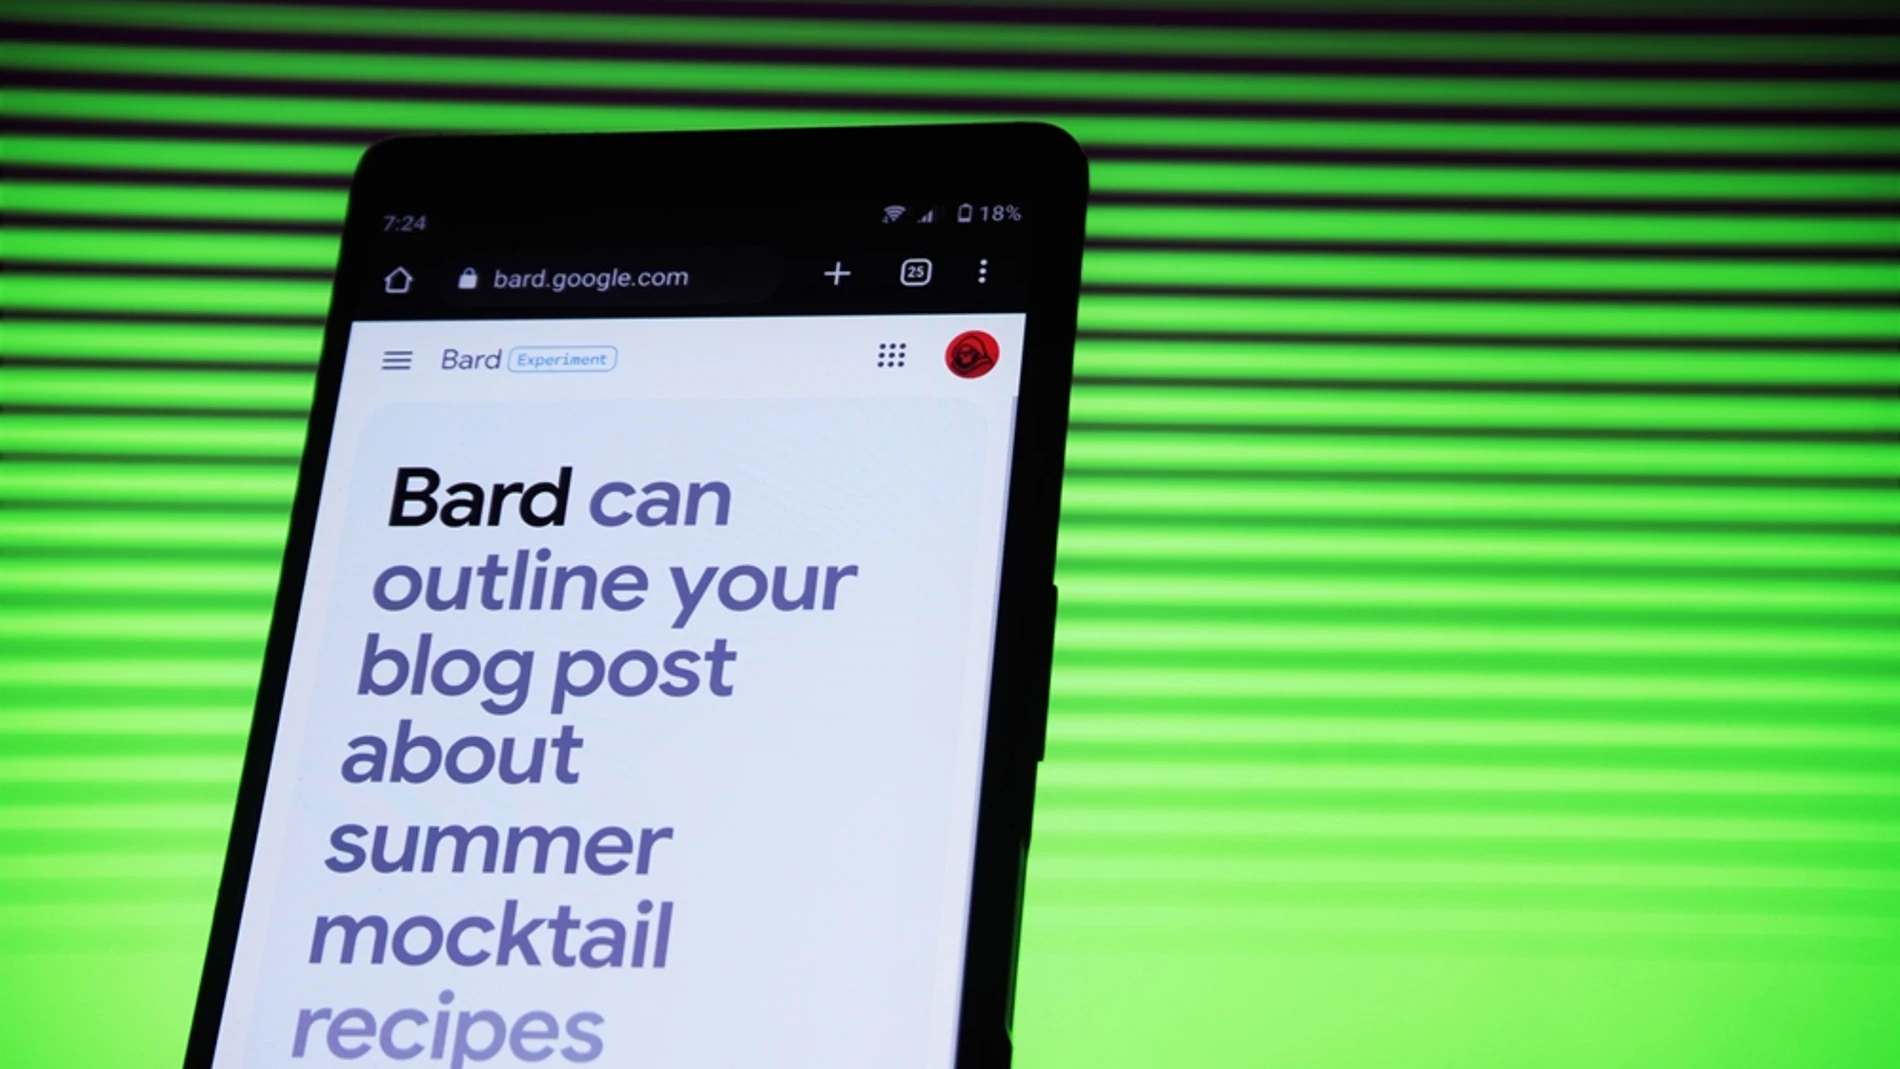 Google anunció la llegada de Bard a mediados de este año.